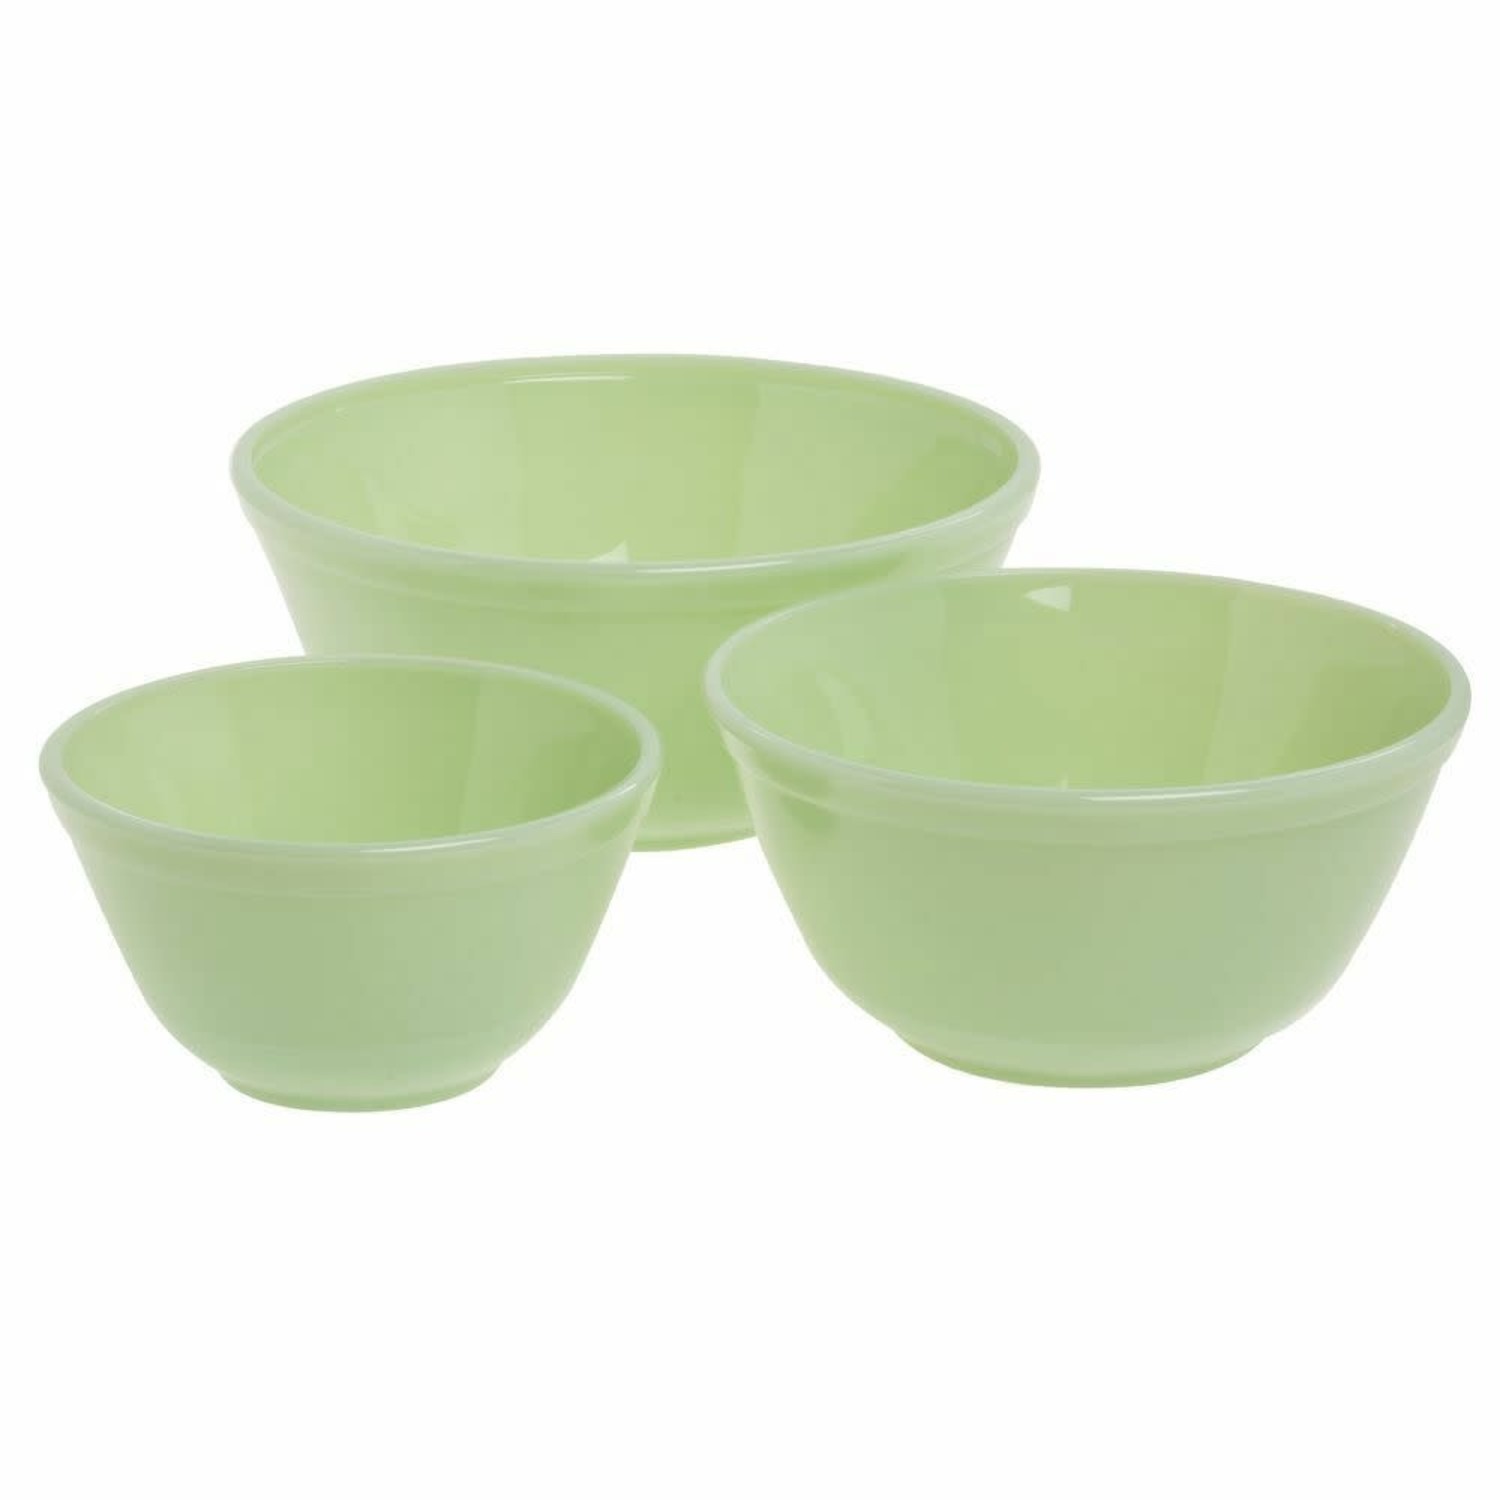 https://cdn.shoplightspeed.com/shops/633447/files/38293227/1500x4000x3/mosser-jade-mixing-bowls-set-of-3.jpg